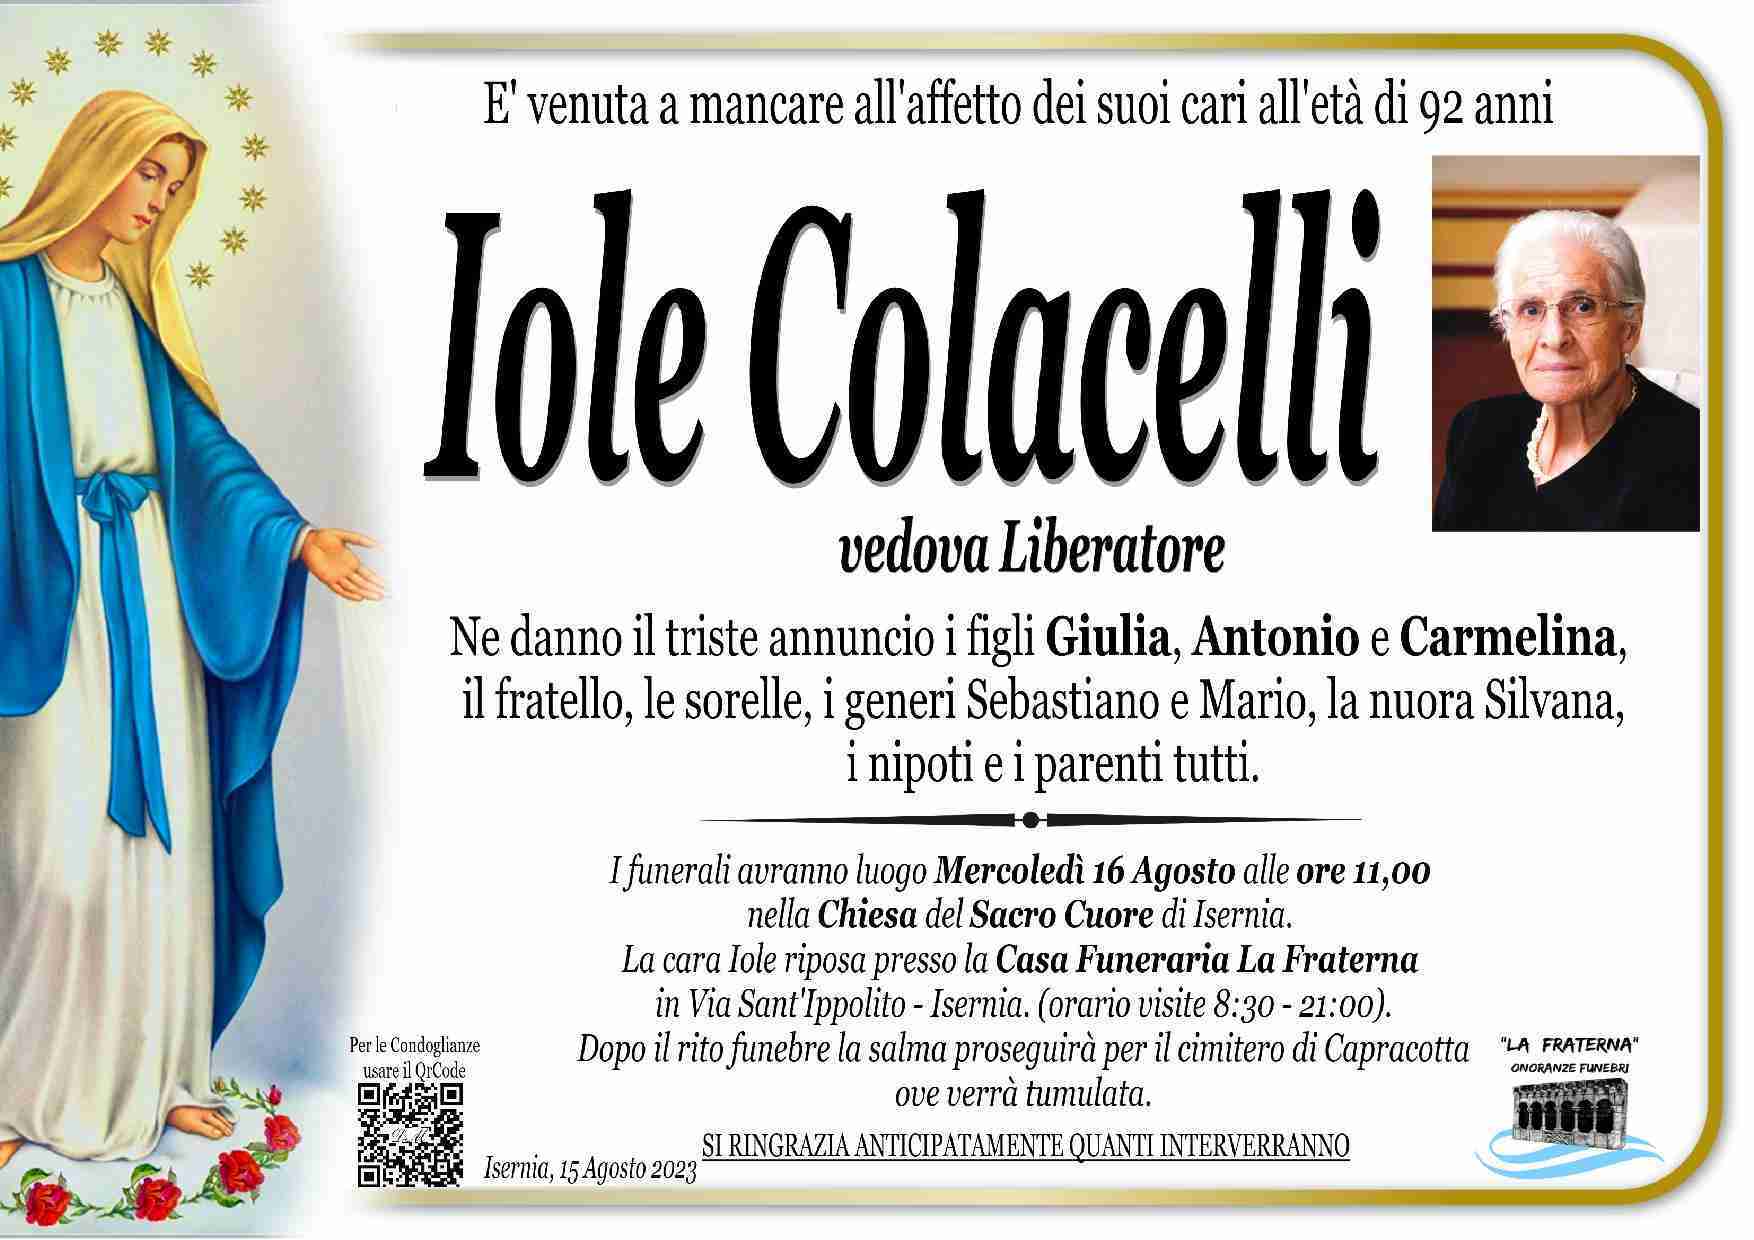 Iole Colacelli